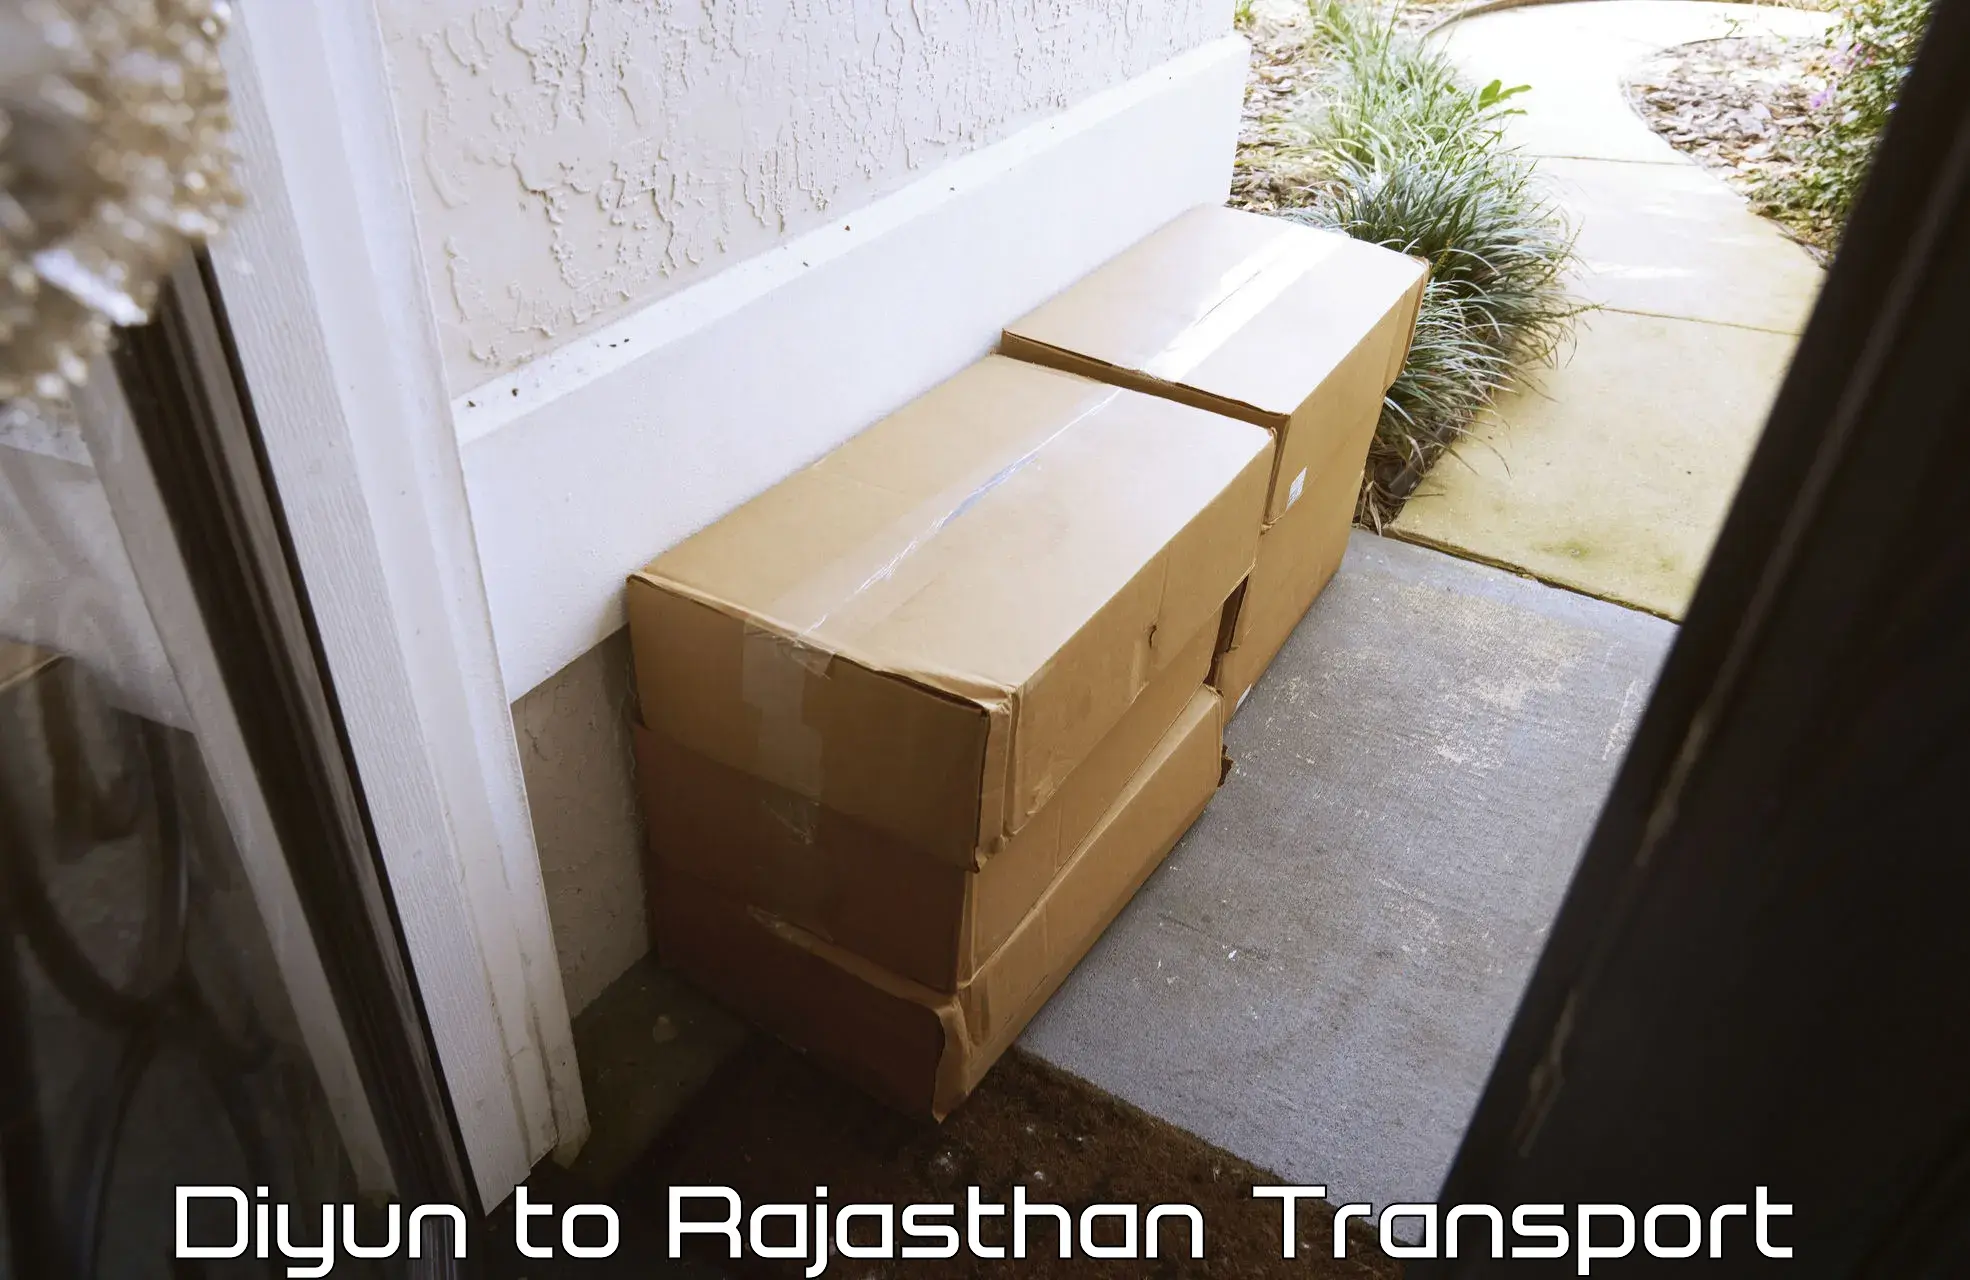 India truck logistics services Diyun to Rajasthan